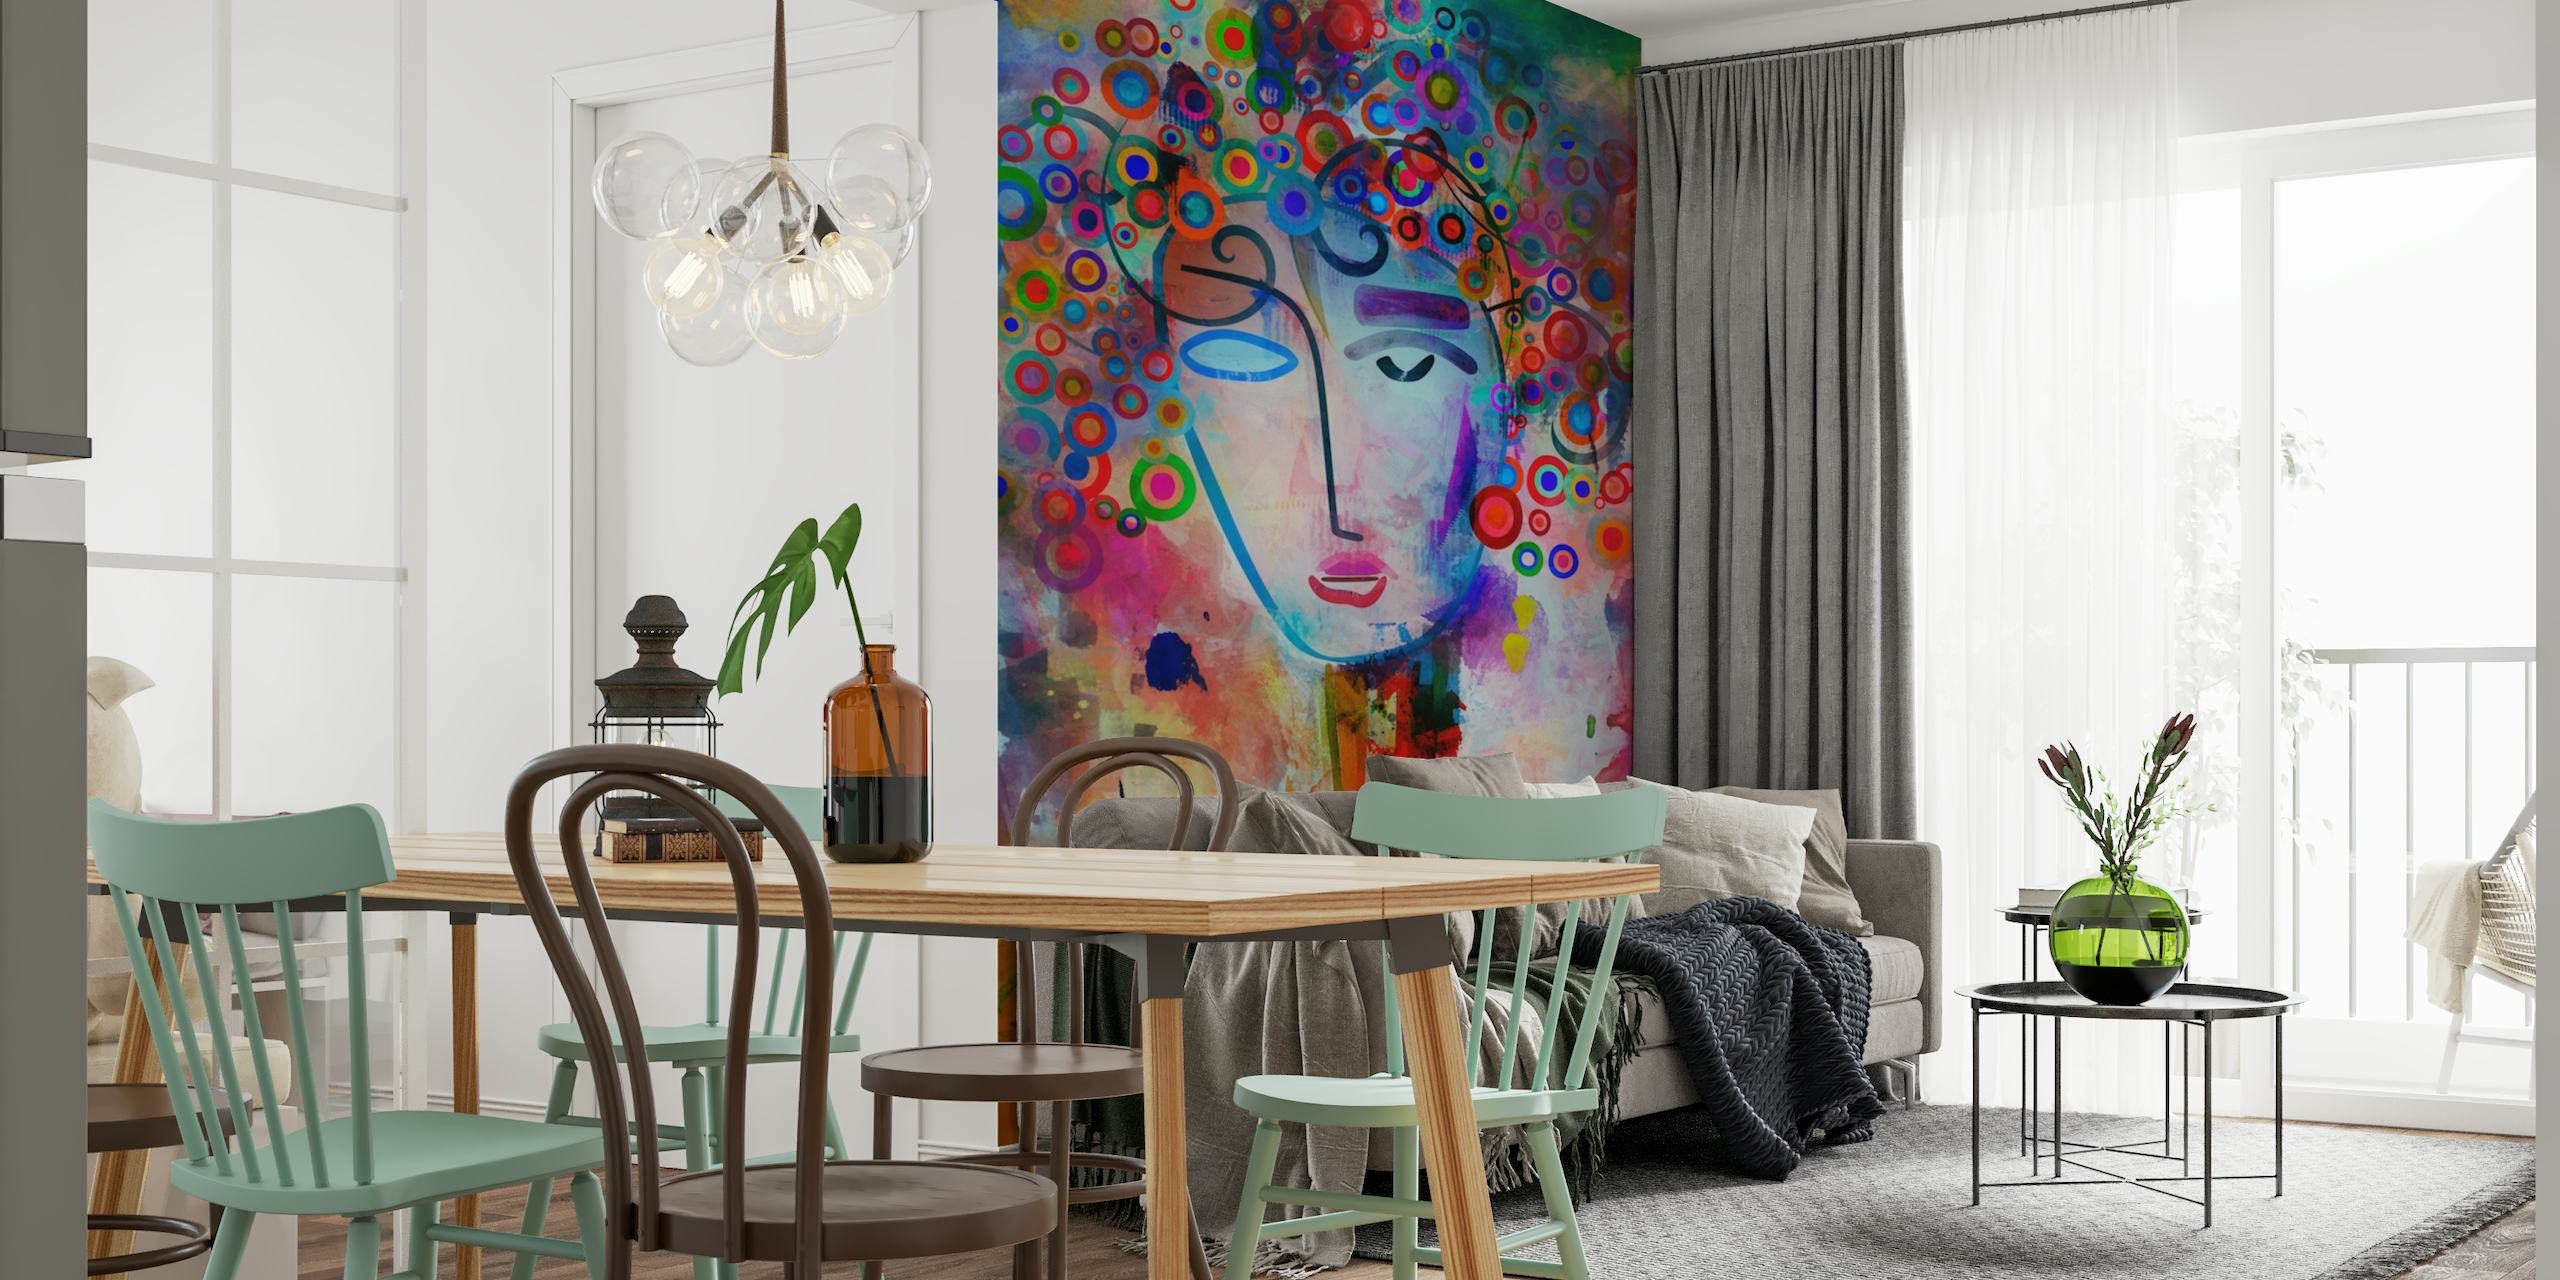 Abstraktes, farbenfrohes Wandbild mit einer fantasievollen Darstellung eines Geistes in einer Brainstorming-Sitzung